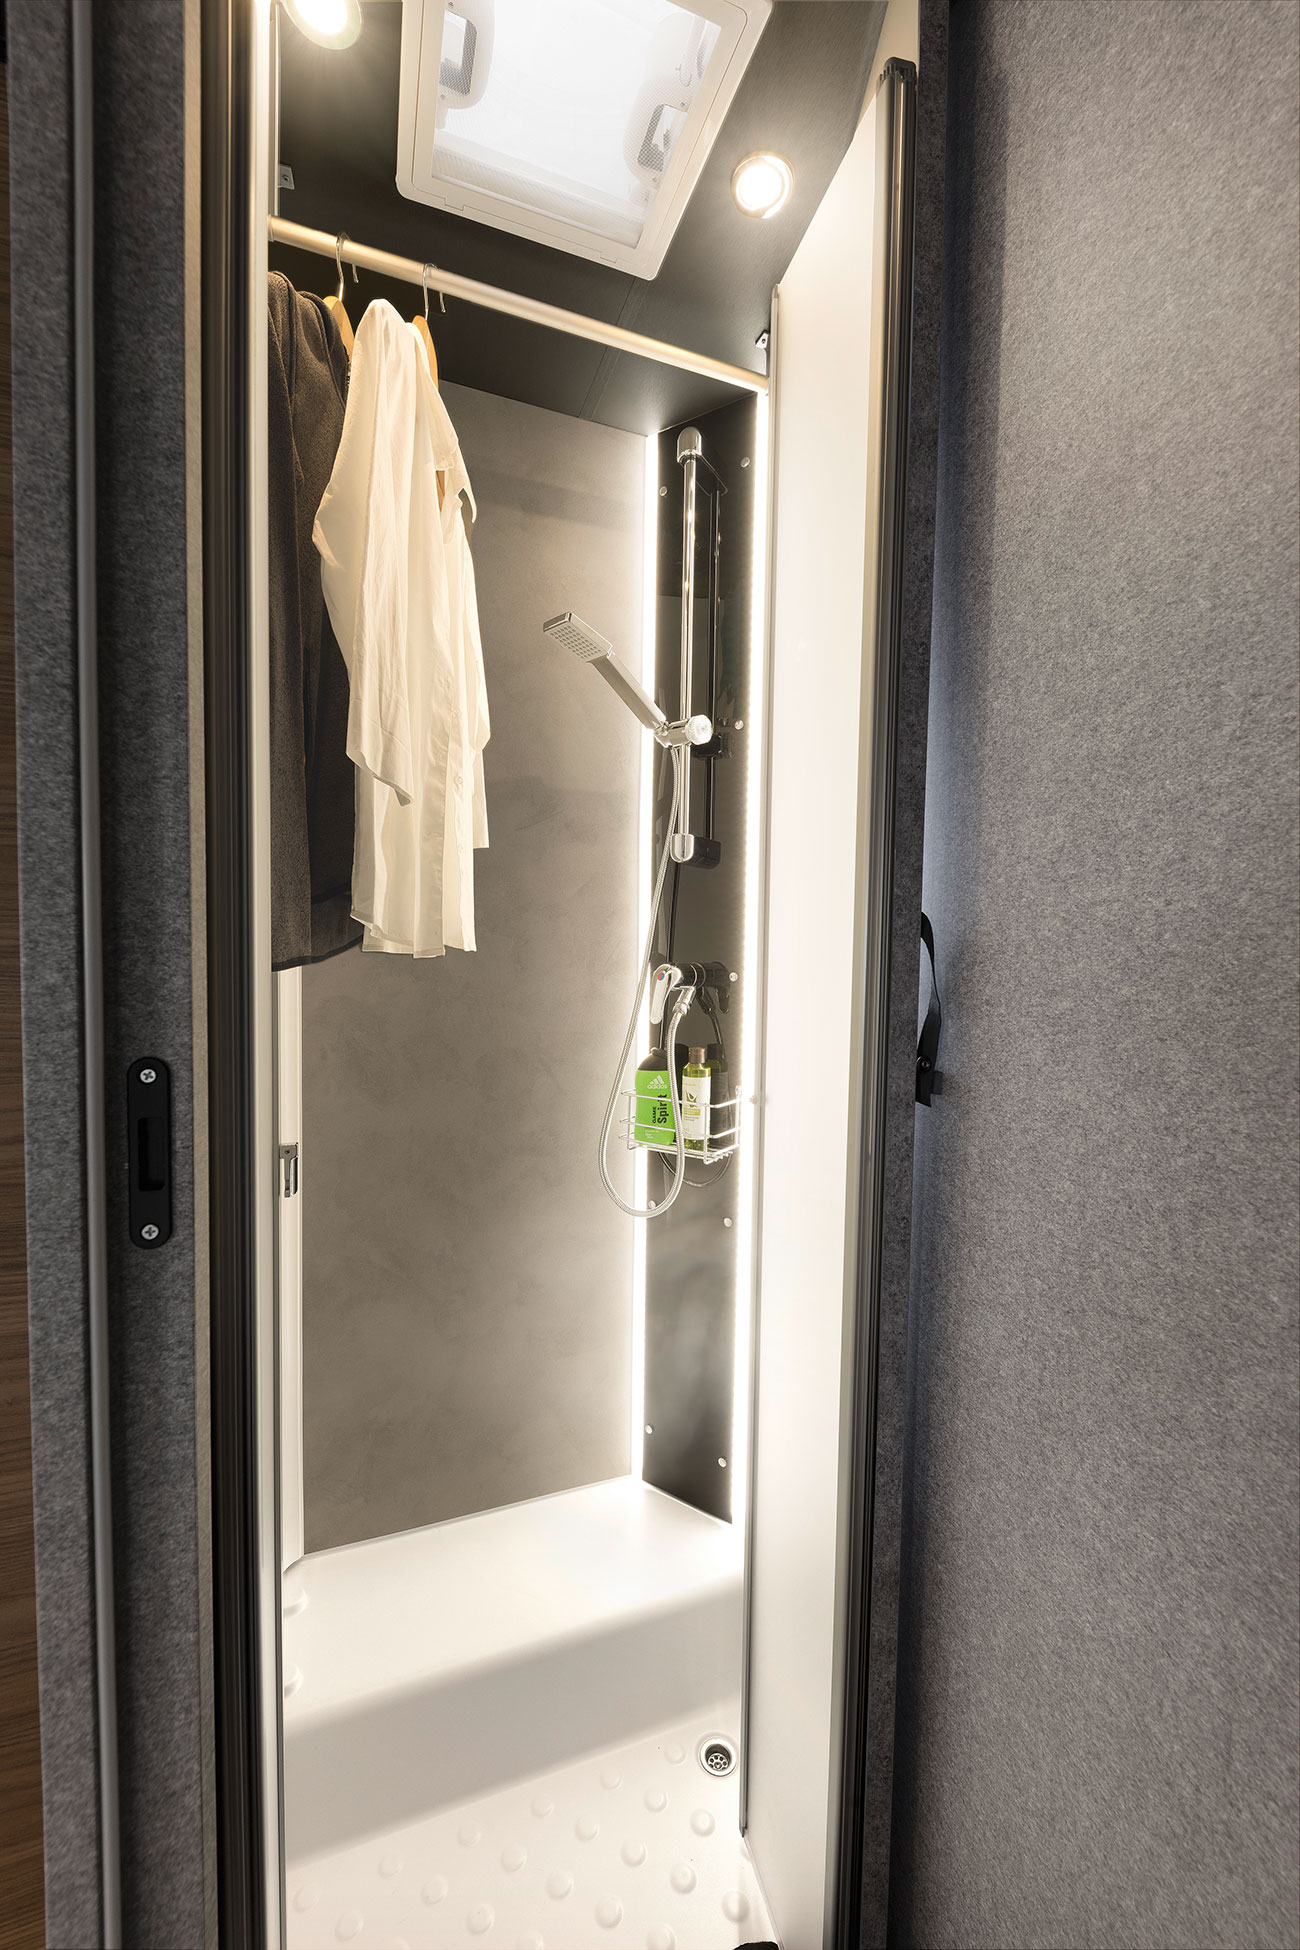 Når brusekabinen ikke benyttes, kan den omdannes til tørrerum for vådt tøj eller blot til klædeskabsudvidelse.